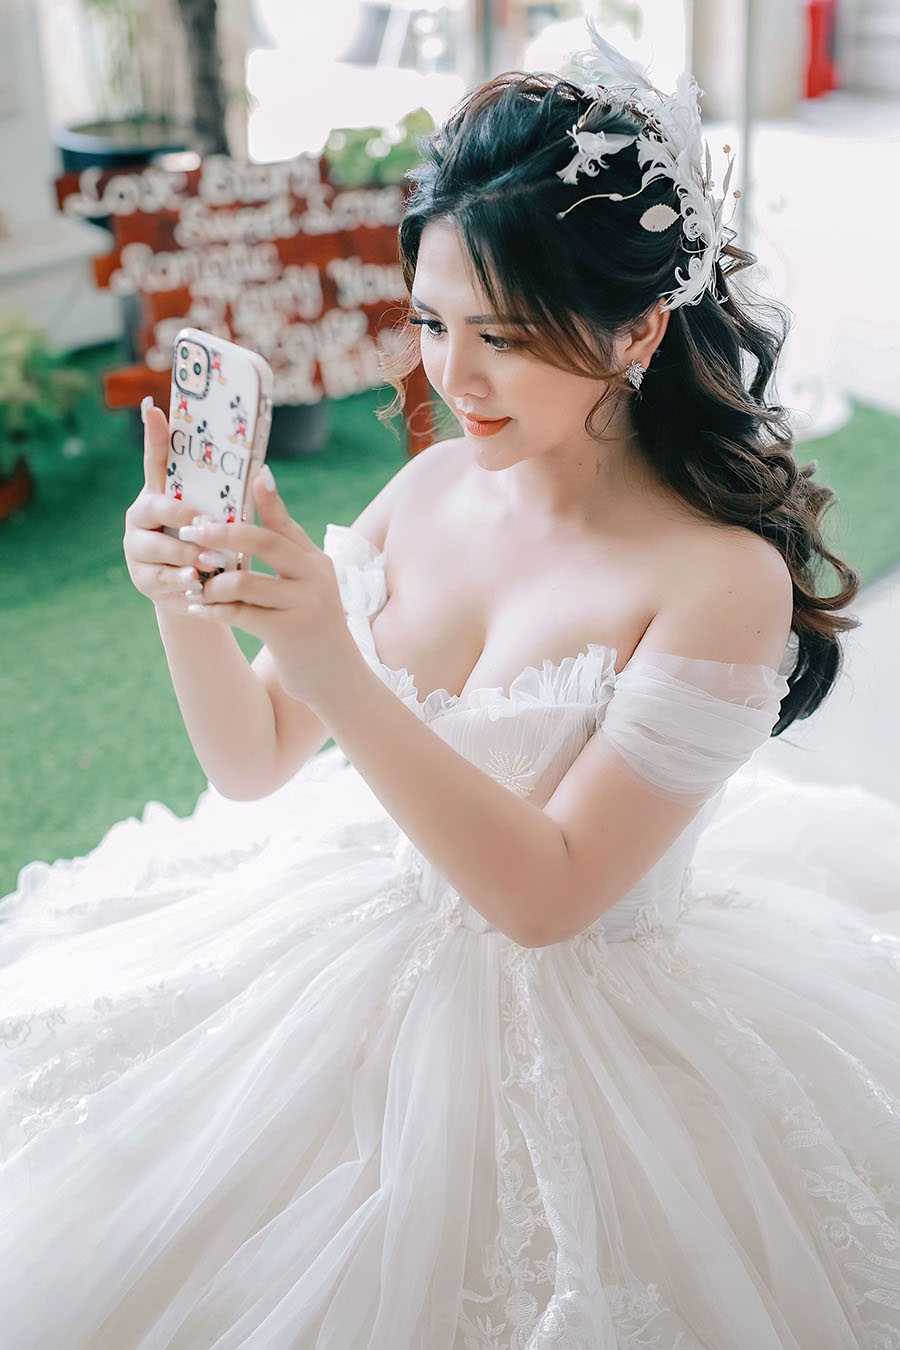 Die schönste Braut im Hotgirl-Dorf, die als Gast ein 28-Milliarden-Hochzeitskleid trägt, wird von allen Promis überschattet